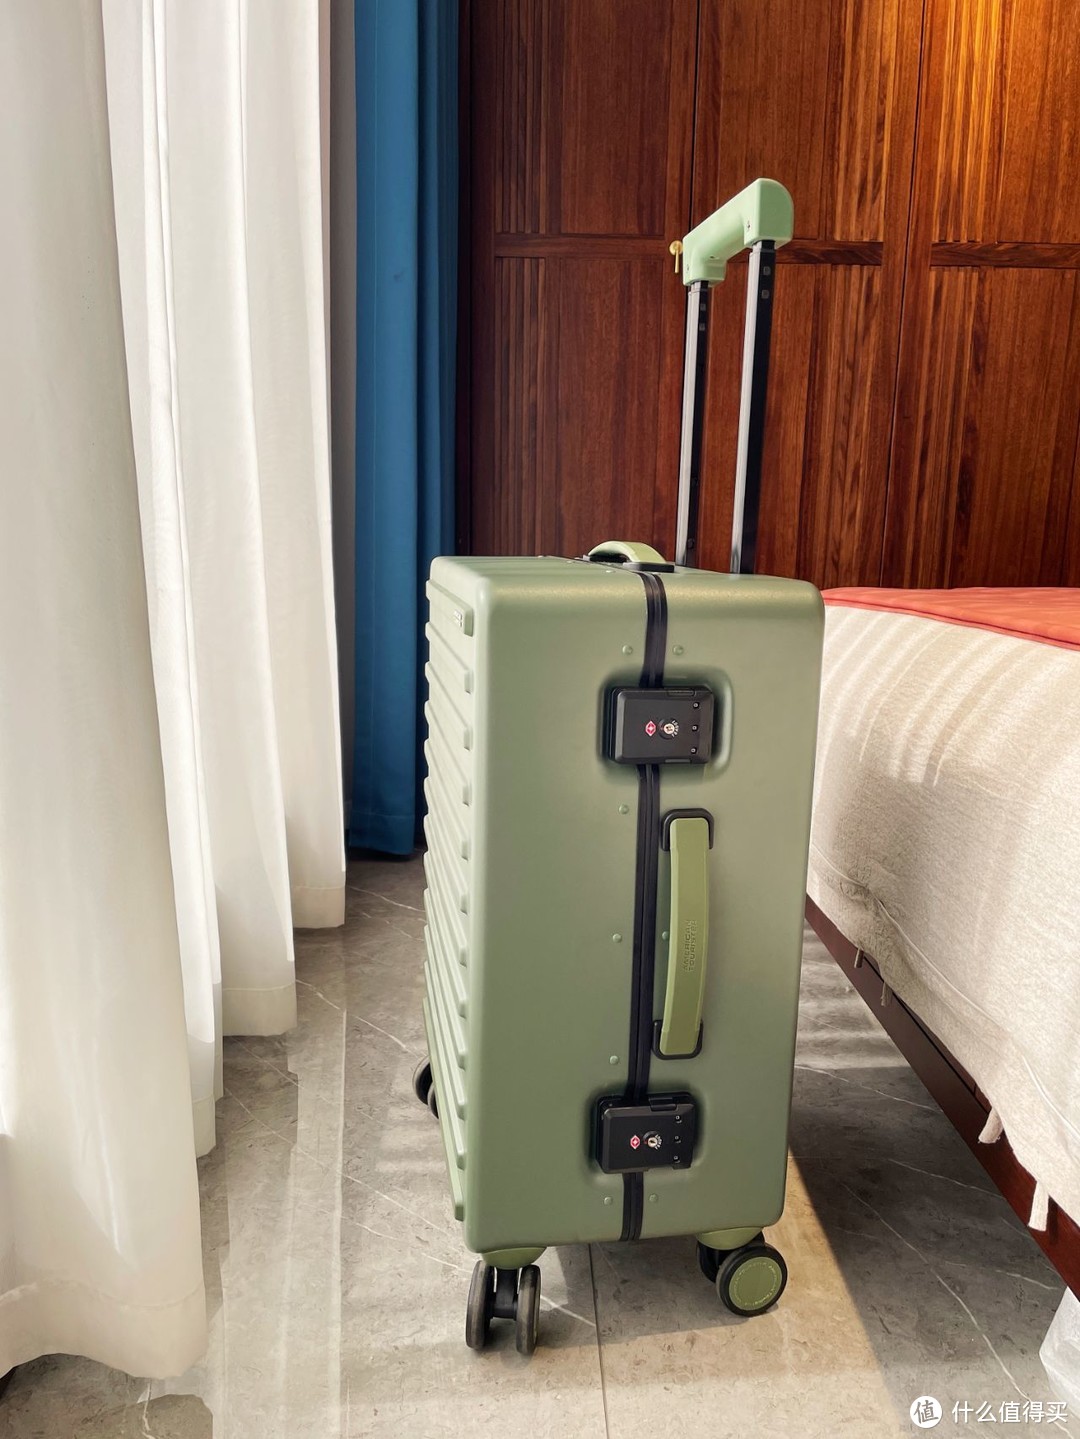 末绿色行李箱与旅行共同相伴